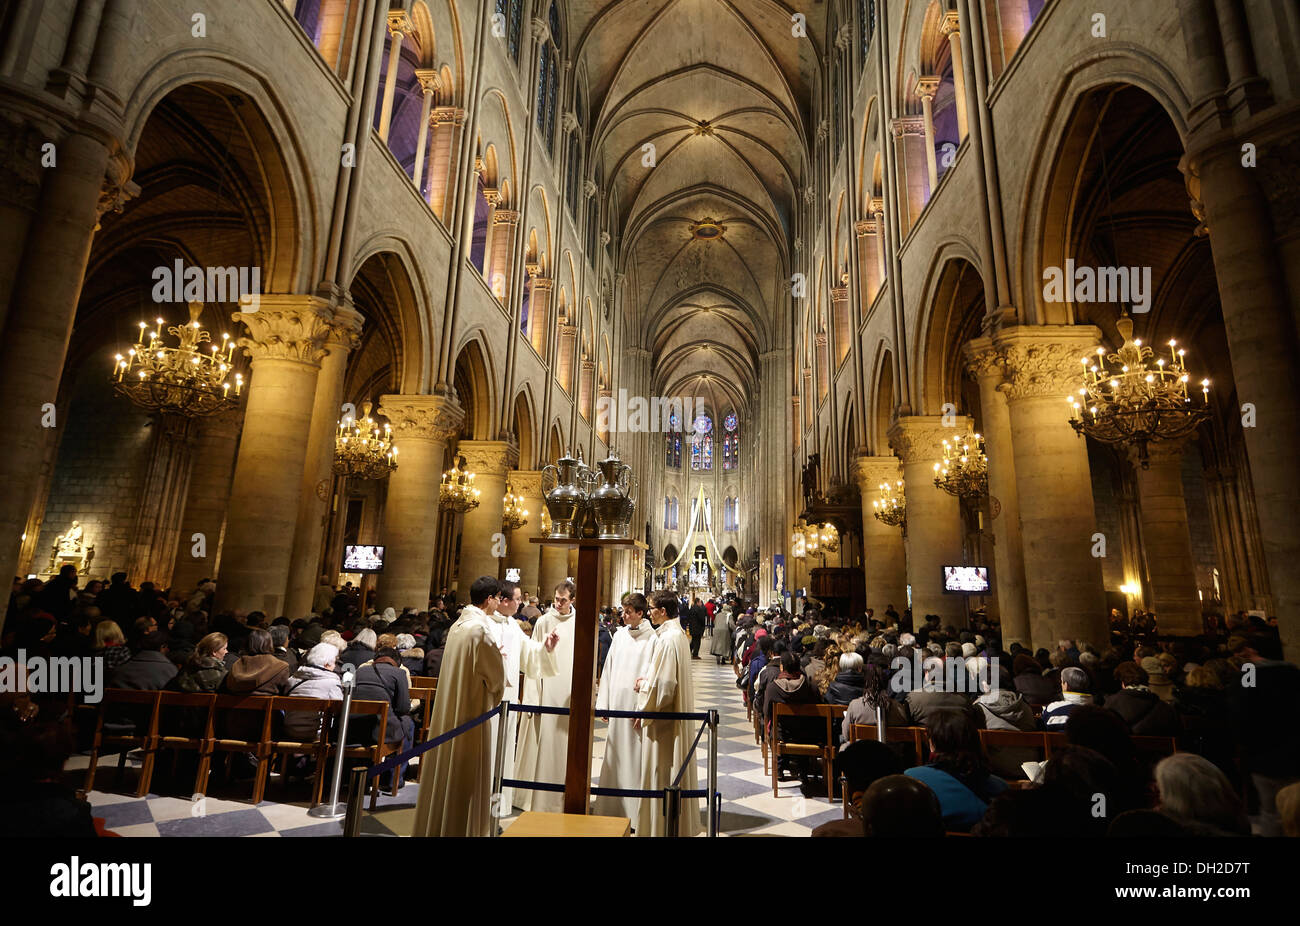 Interieur, Kathedrale Notre-Dame, Paris, Frankreich Stockfoto